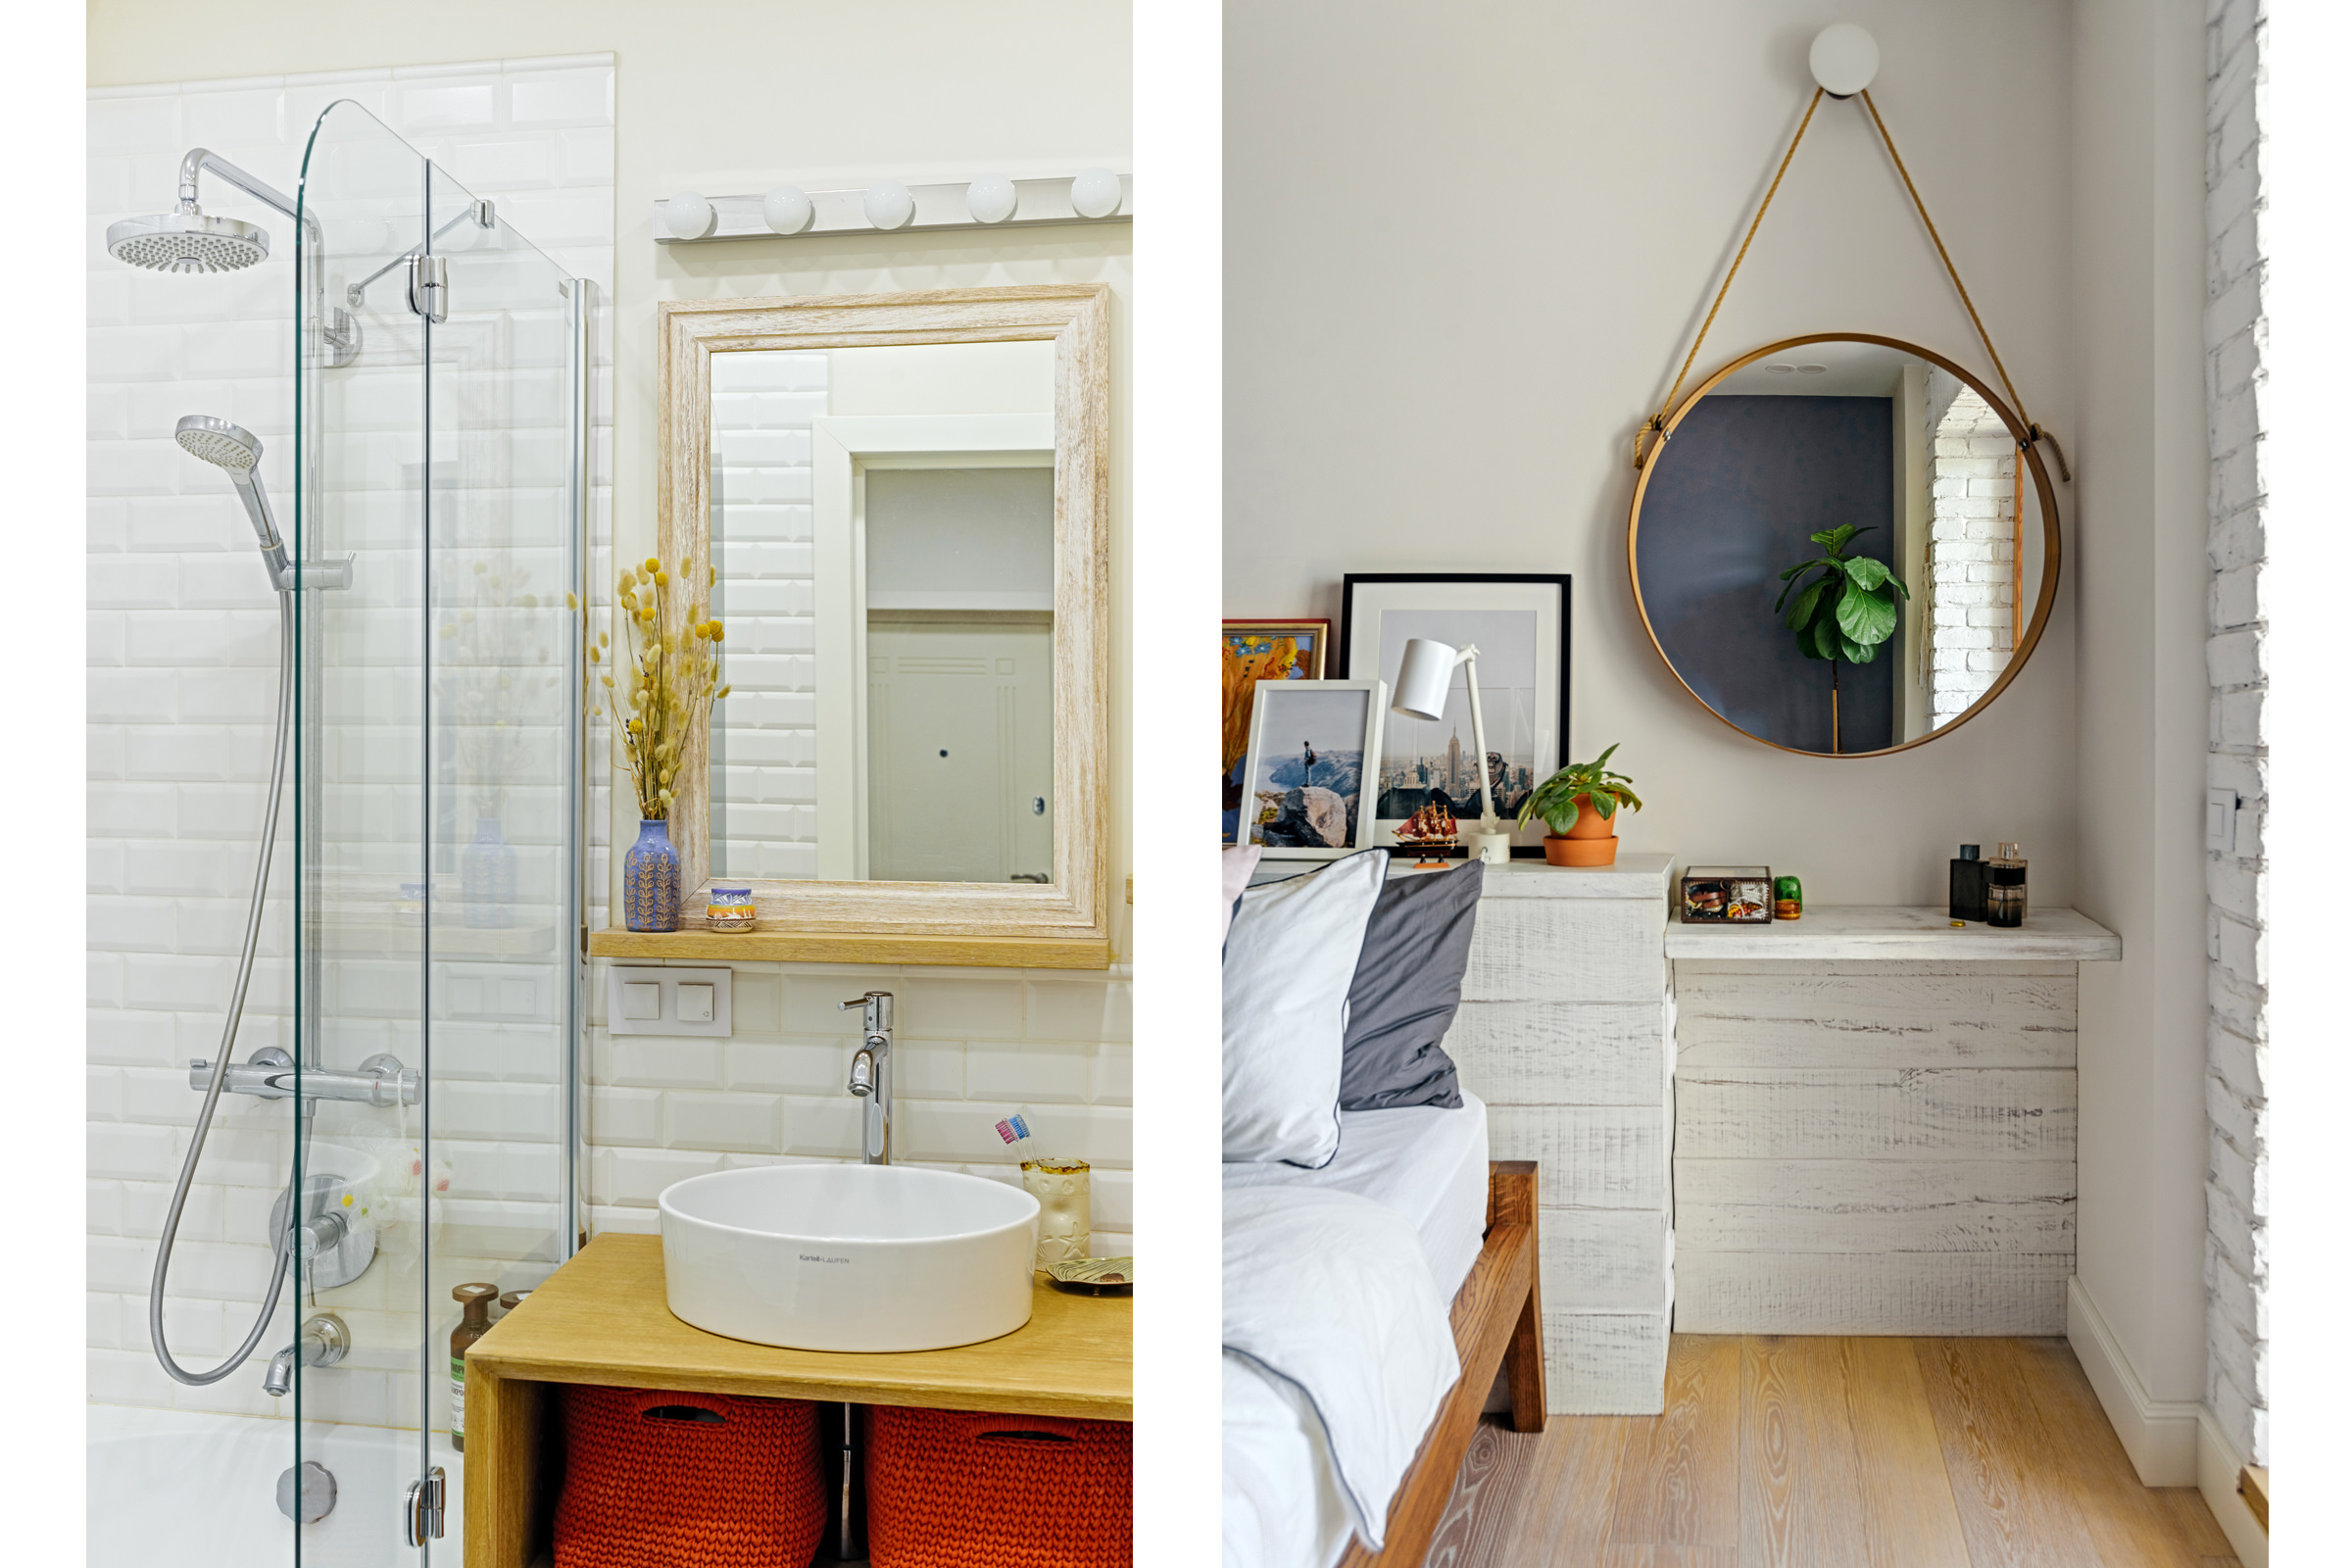 Детали интерьера современной ванной комнаты и спальни, фотосъёмка квартиры для объявления аренды на порталах недвижимости